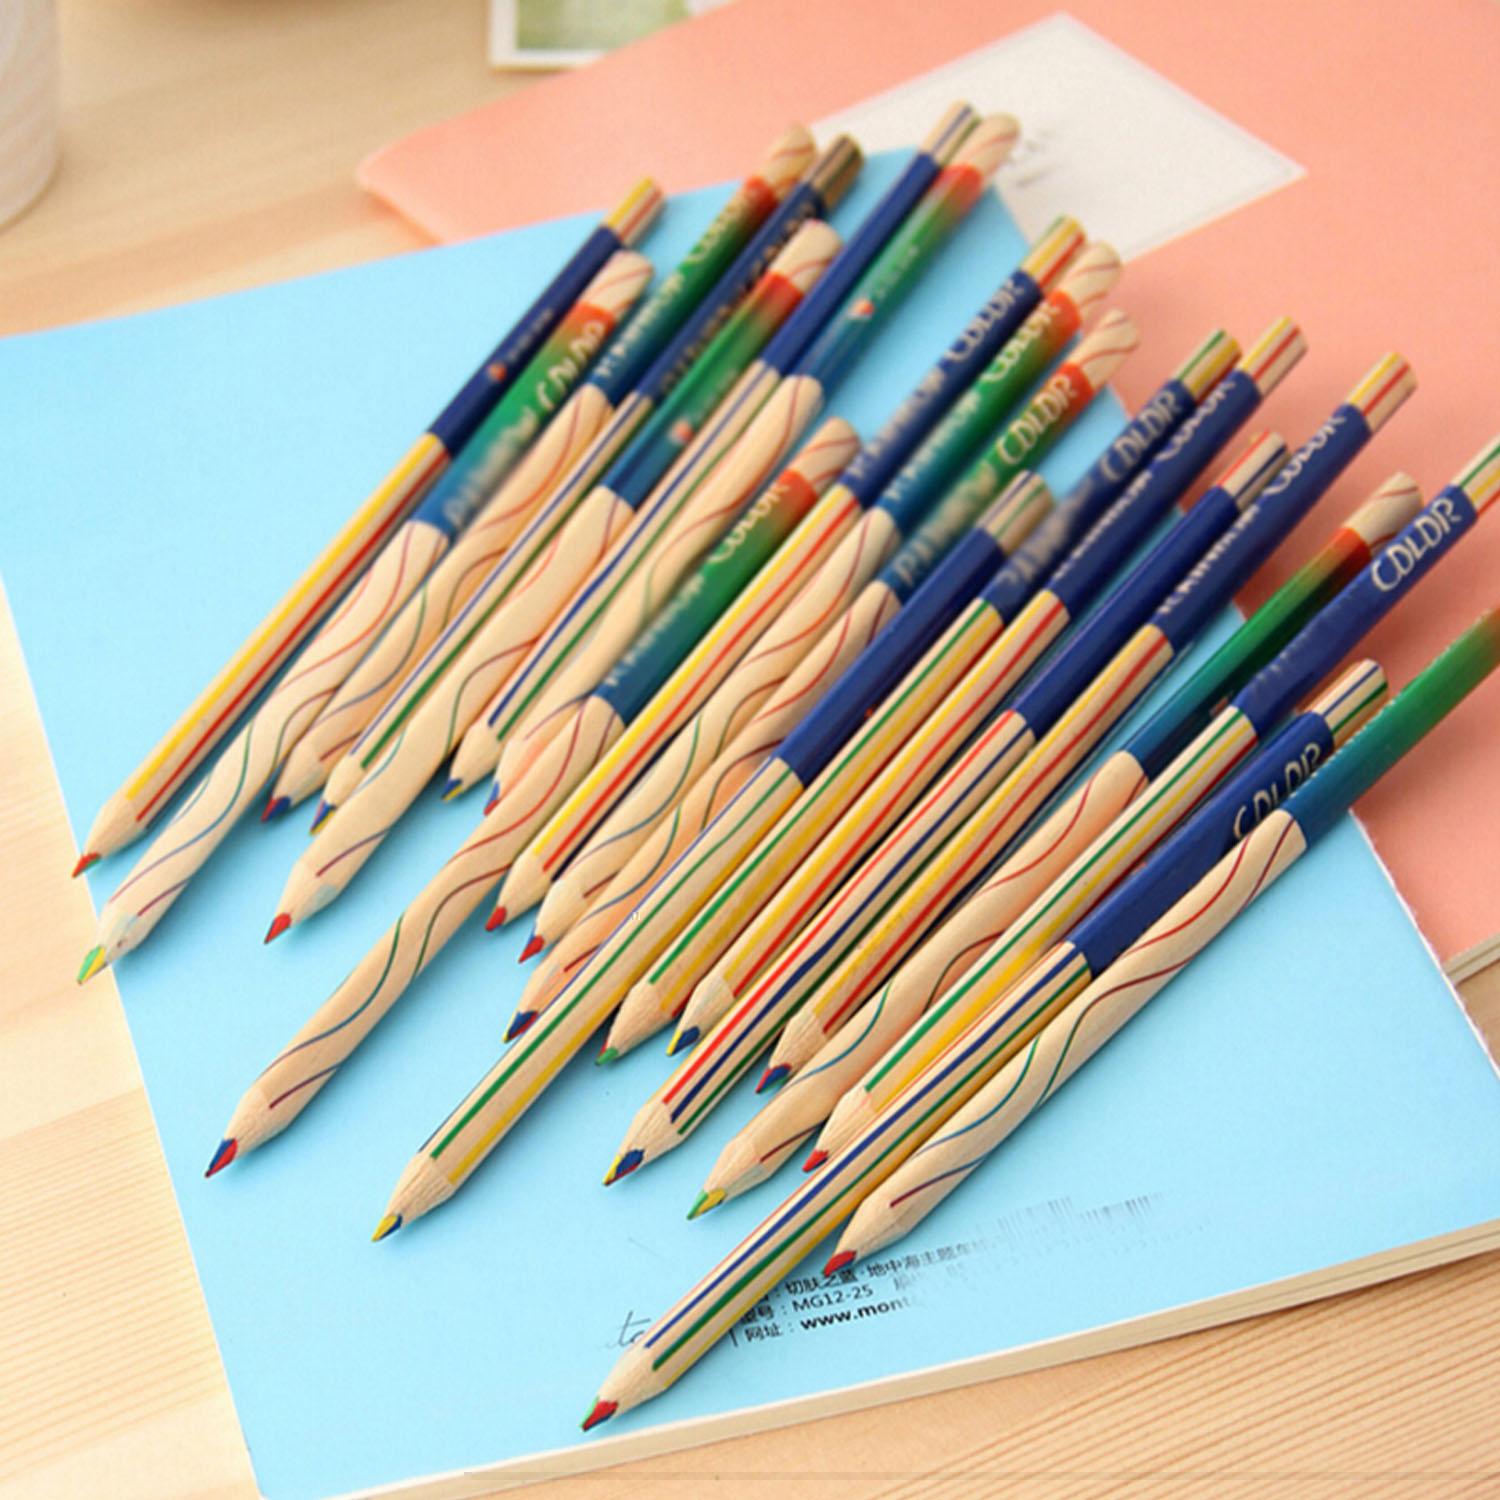 Stabilo kuru boya kalemi renkler